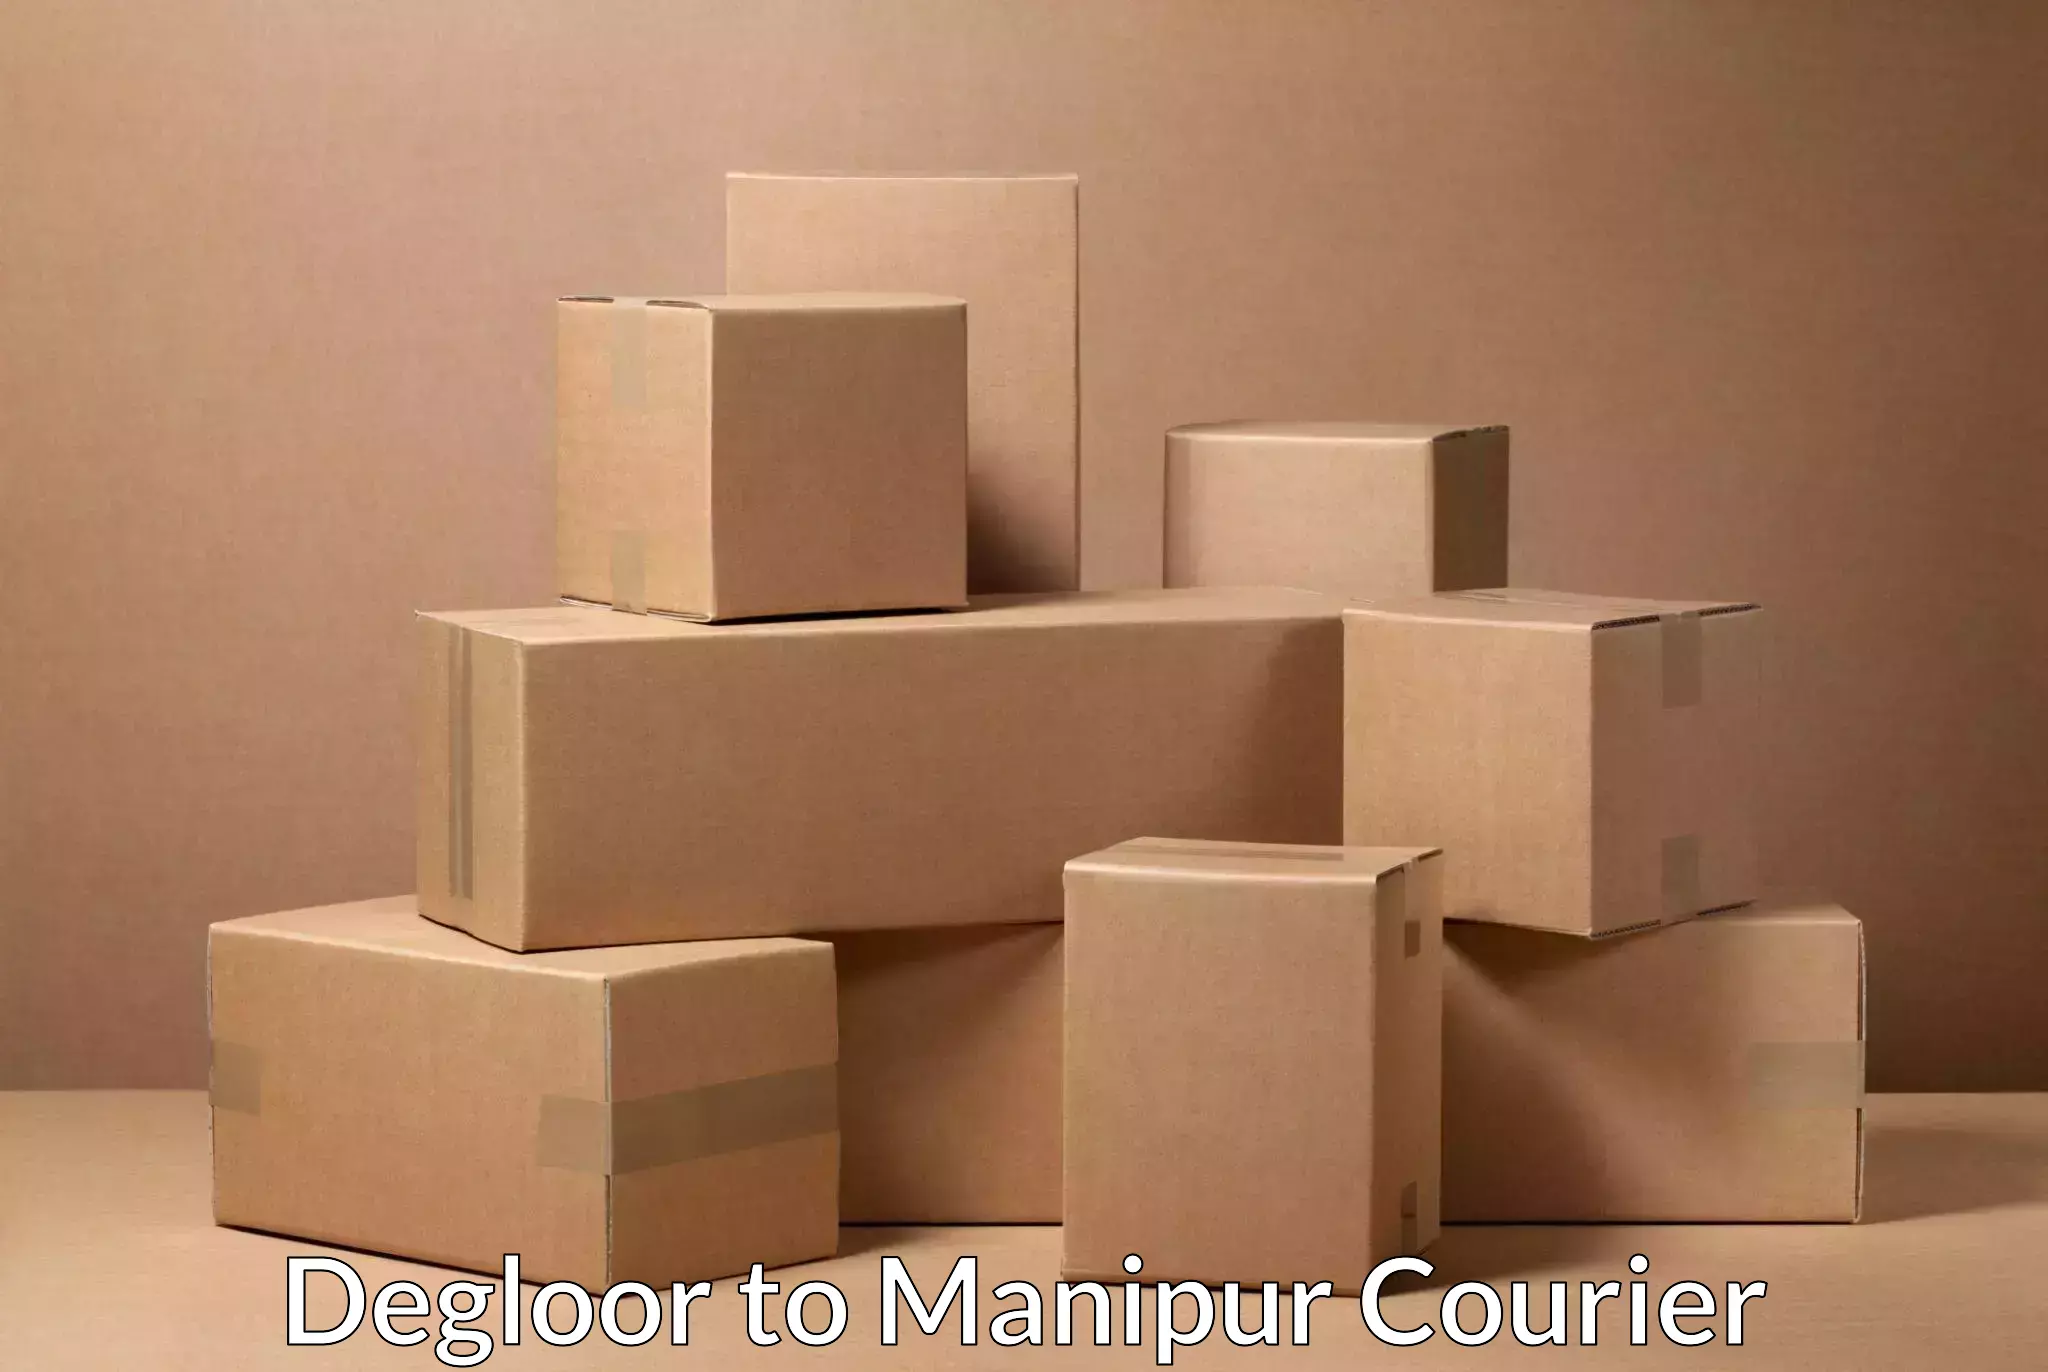 On-demand courier Degloor to Churachandpur